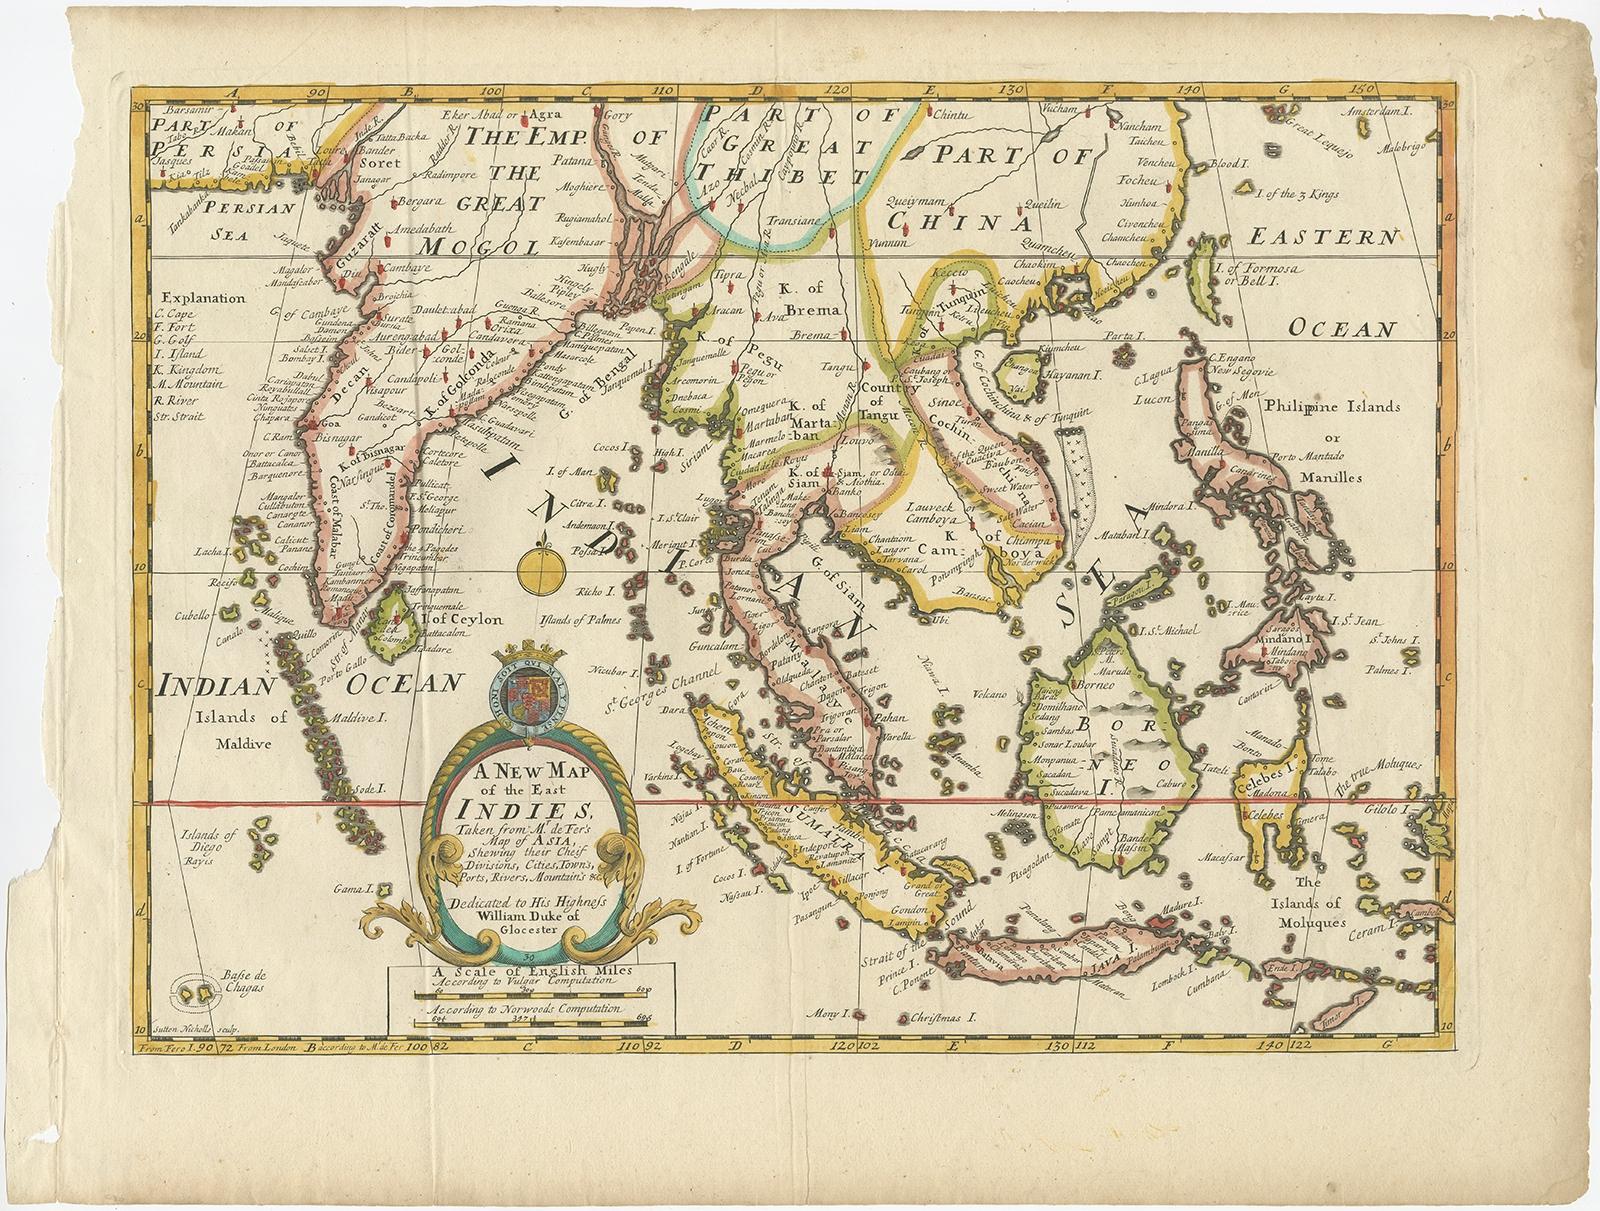 Description : Carte ancienne intitulée 'A New Map of the East Indies'. Ancienne carte couvrant toute l'Asie du Sud-Est, de la Perse à l'île de Timor, y compris les nations actuelles de l'Inde, de Ceylan, de la Thaïlande, de la Birmanie (Myanmar), de